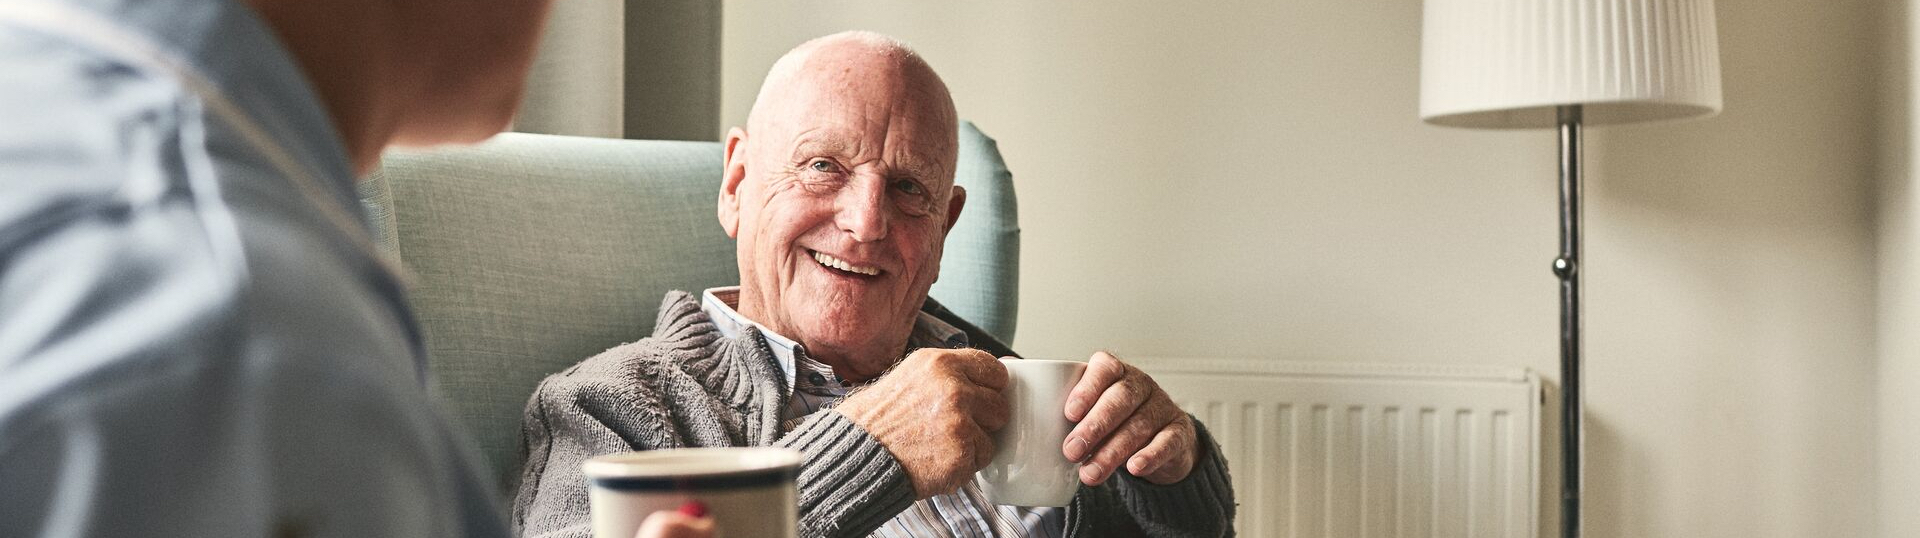 elderly man enjoying a cup of coffee with a nurse